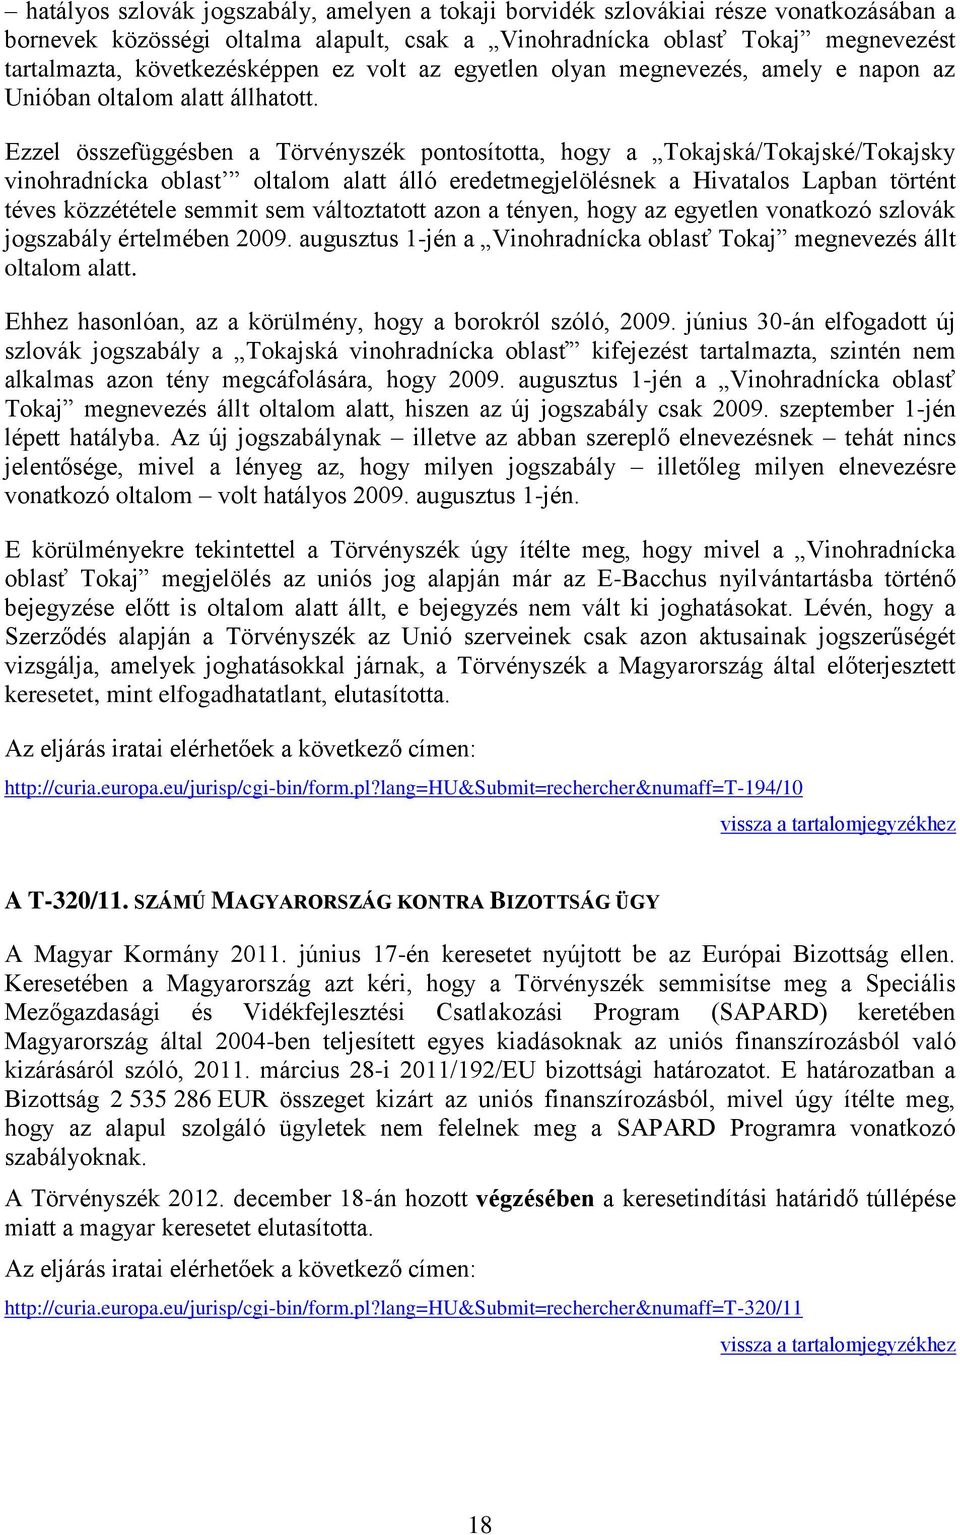 Ezzel összefüggésben a Törvényszék pontosította, hogy a Tokajská/Tokajské/Tokajsky vinohradnícka oblast oltalom alatt álló eredetmegjelölésnek a Hivatalos Lapban történt téves közzététele semmit sem